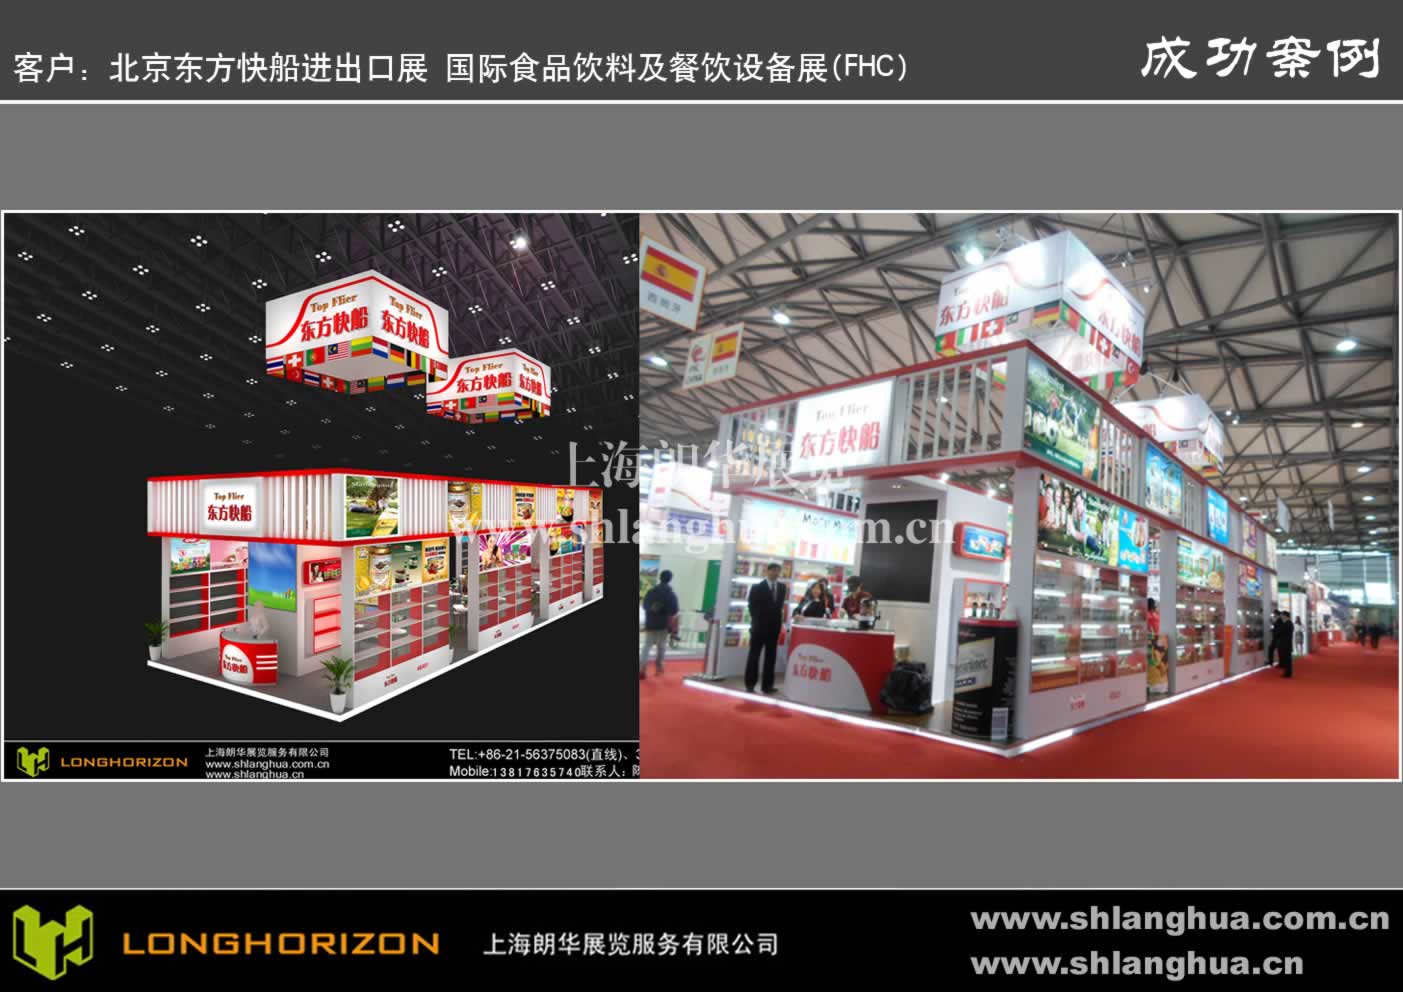 北京东方快船进出口展 国际食品饮料及餐饮设备展(FHC)